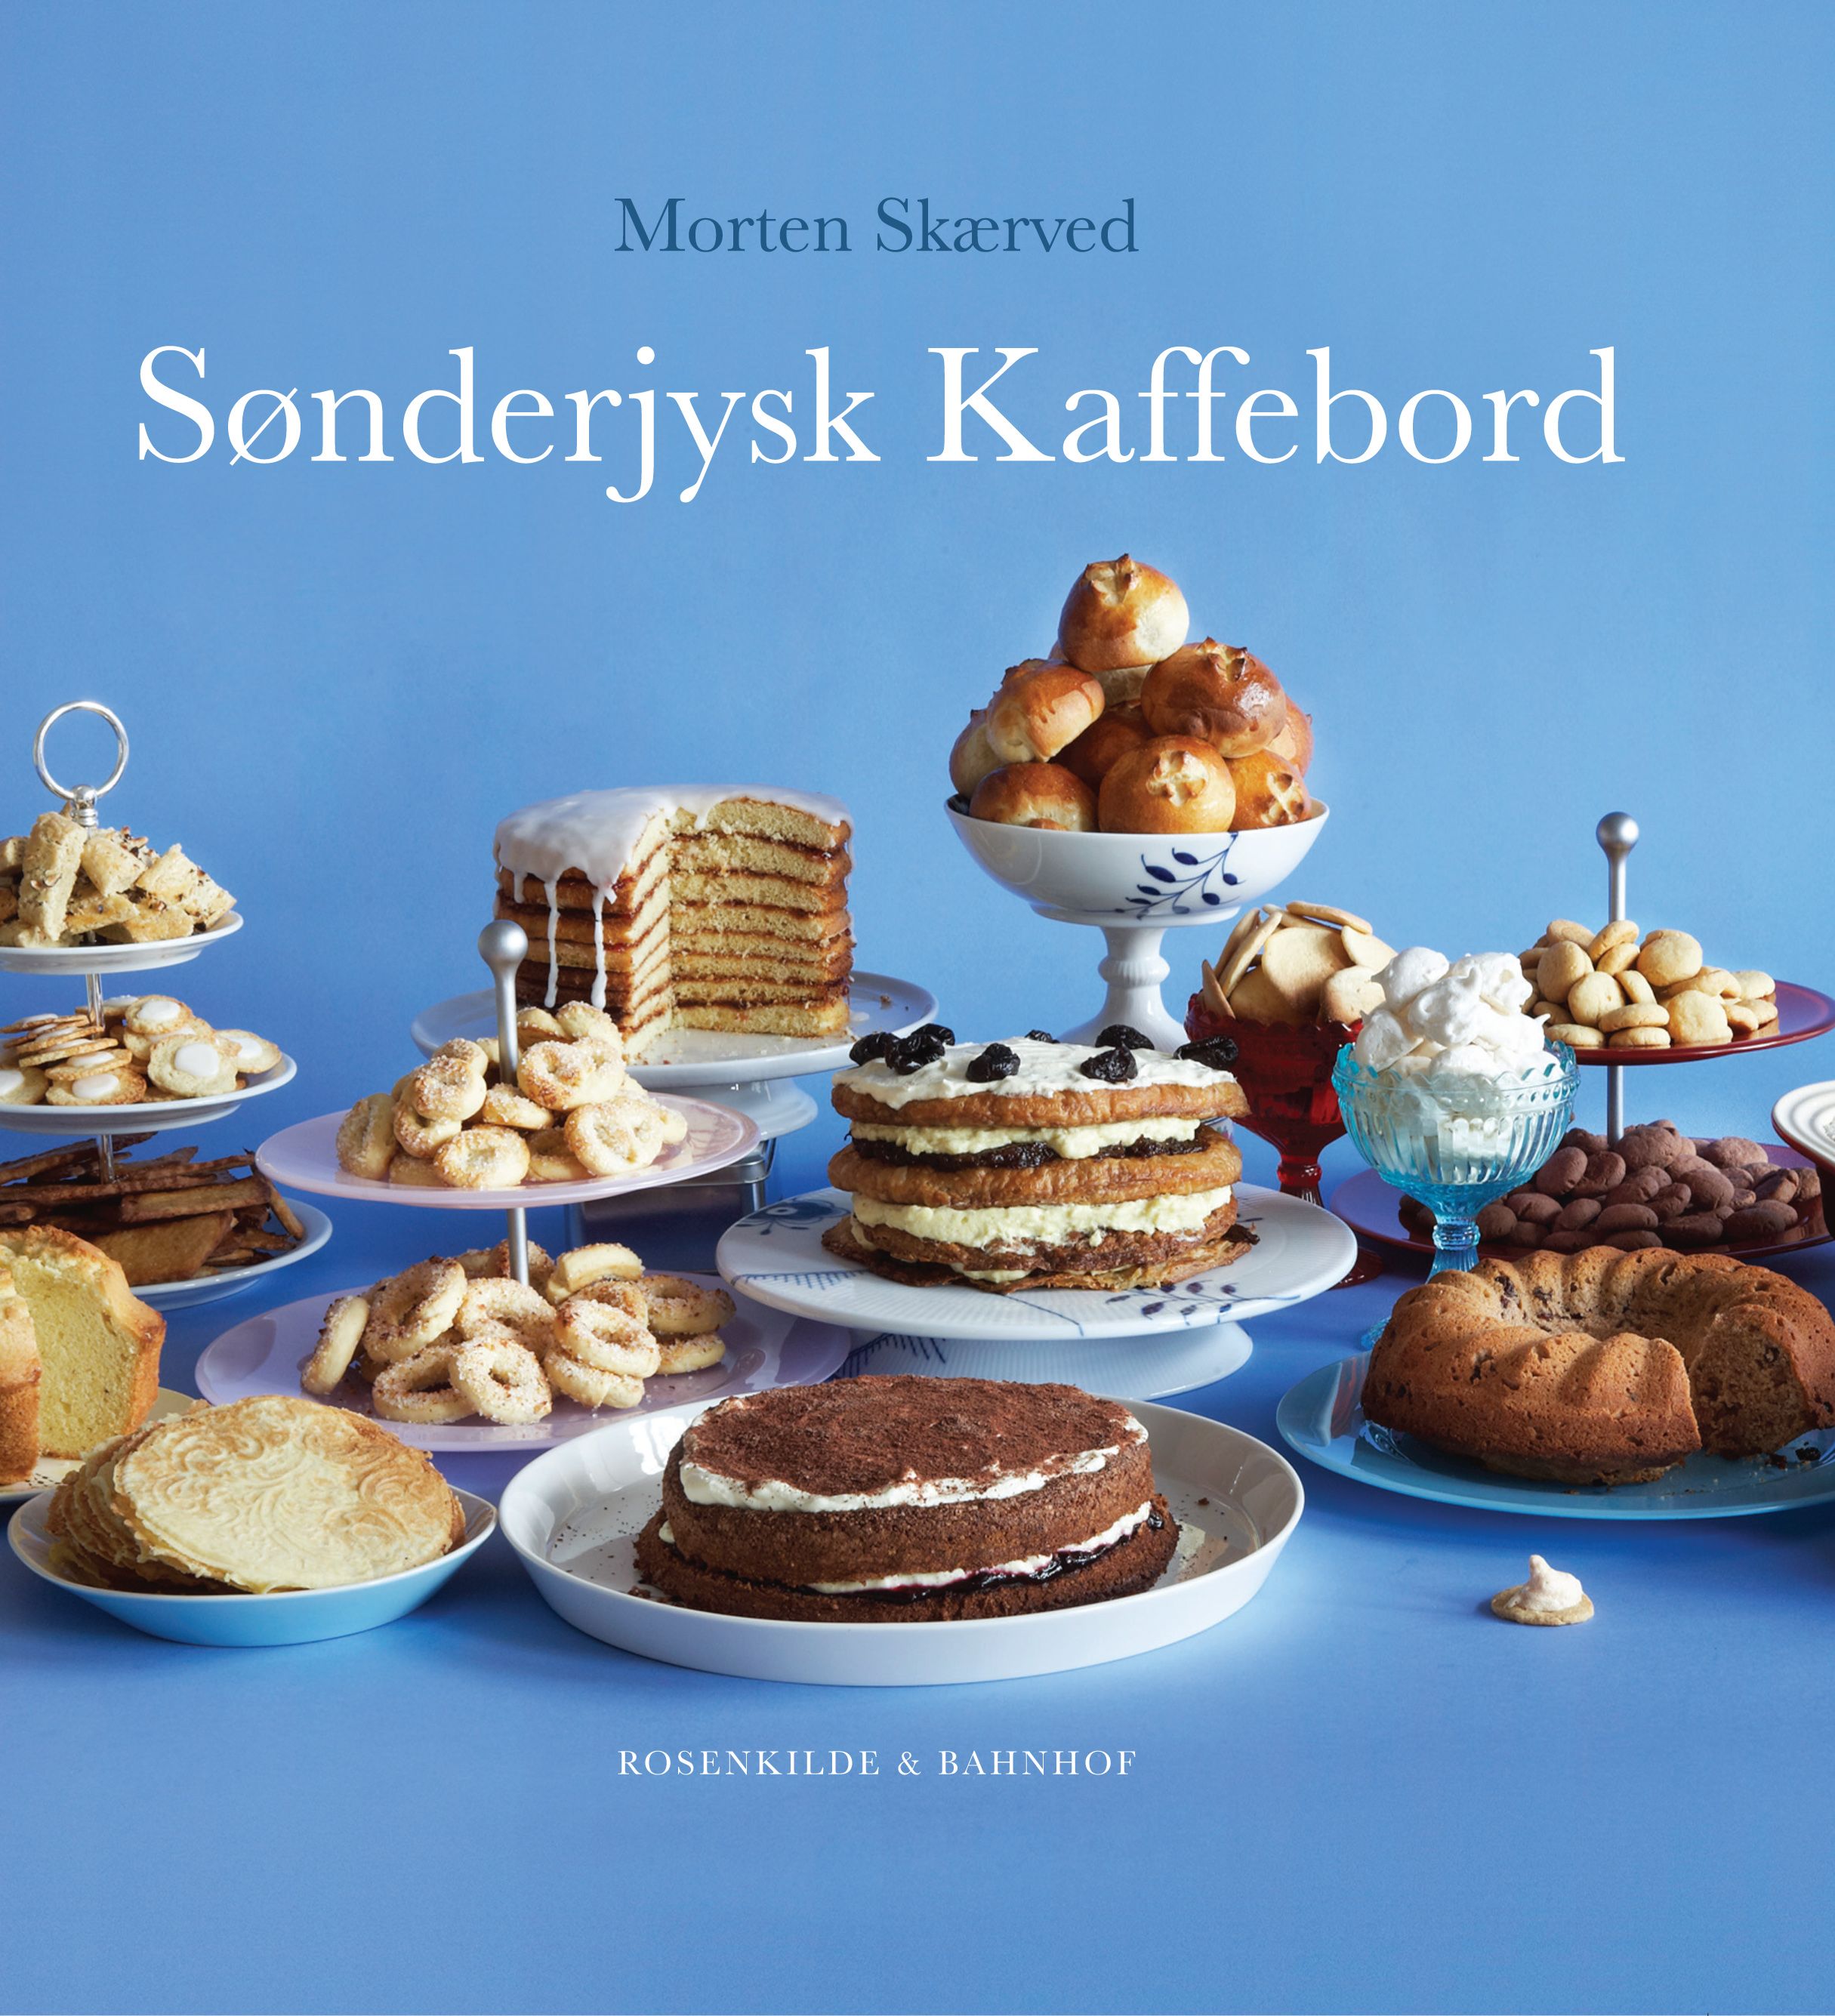 Sønderjysk kaffebord, e-bog af Morten Skærved